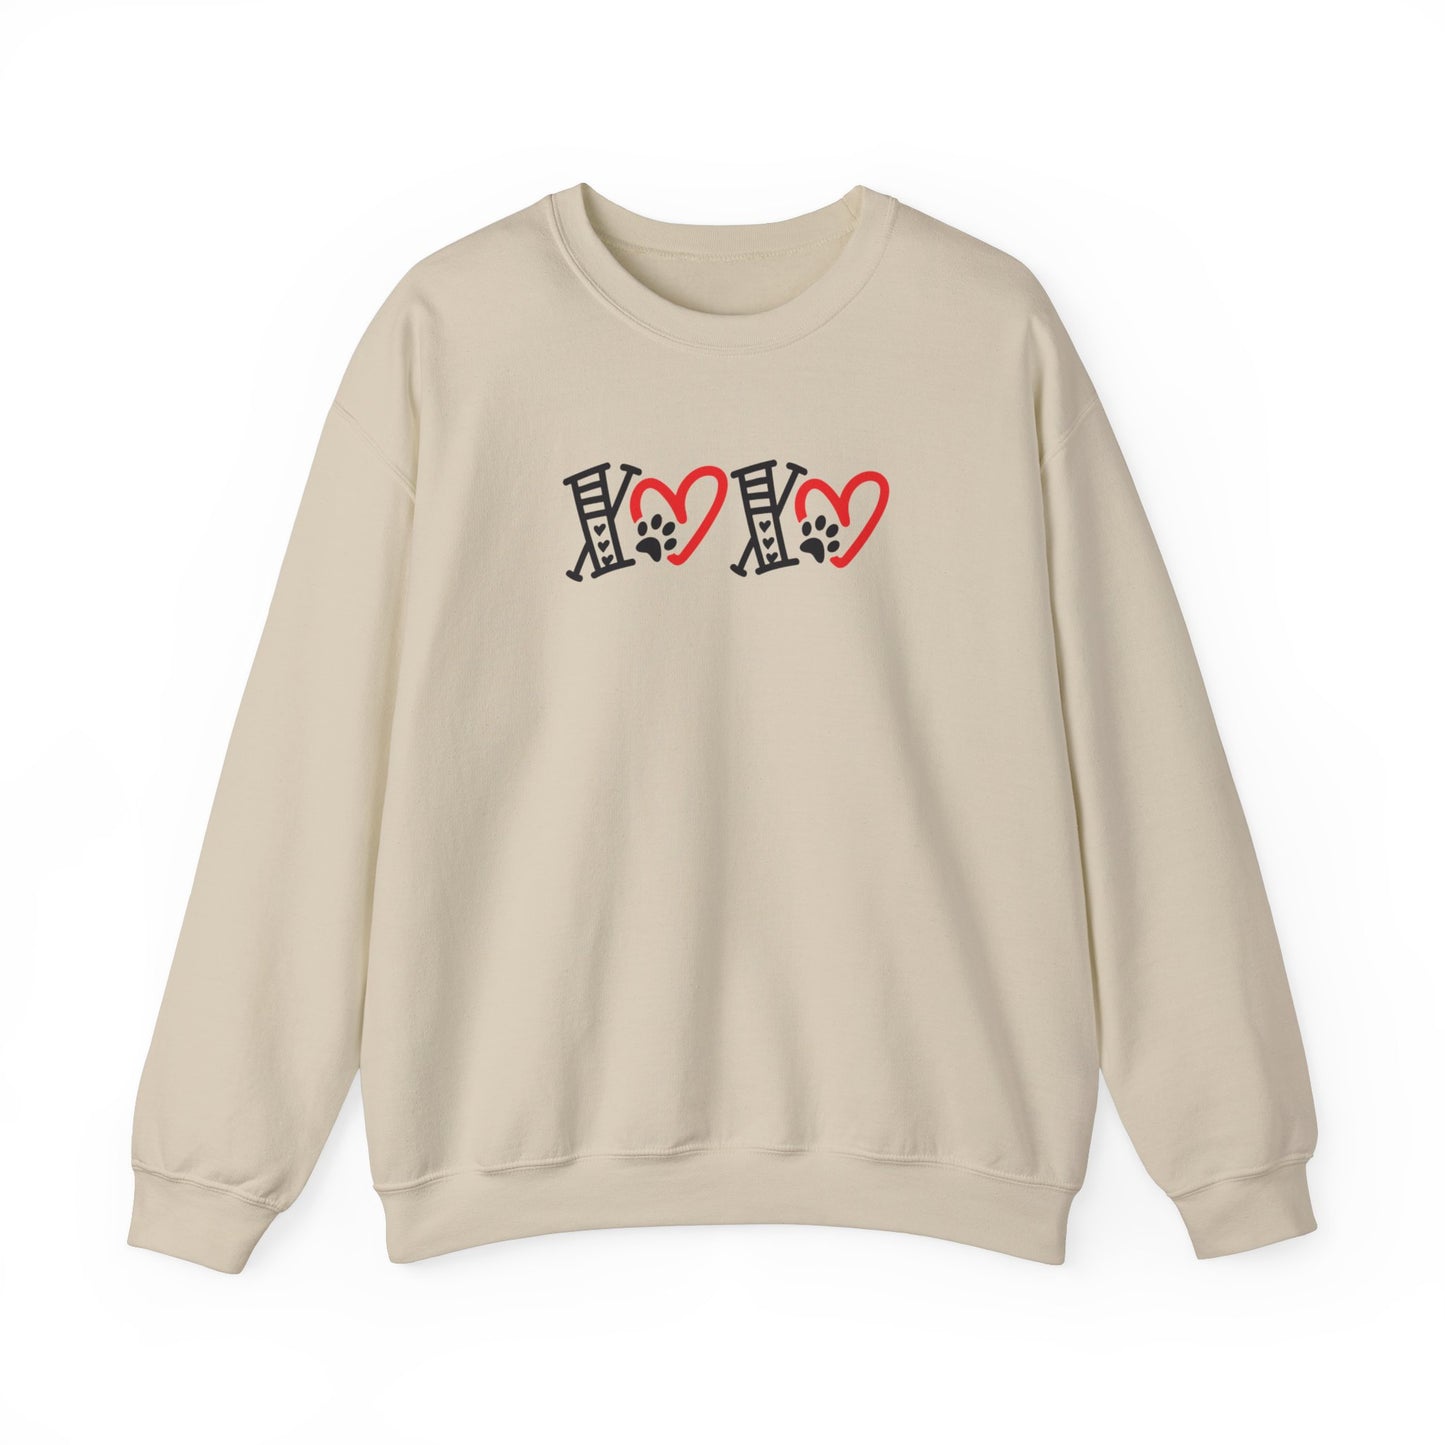 XOXO Crewneck Sweatshirt